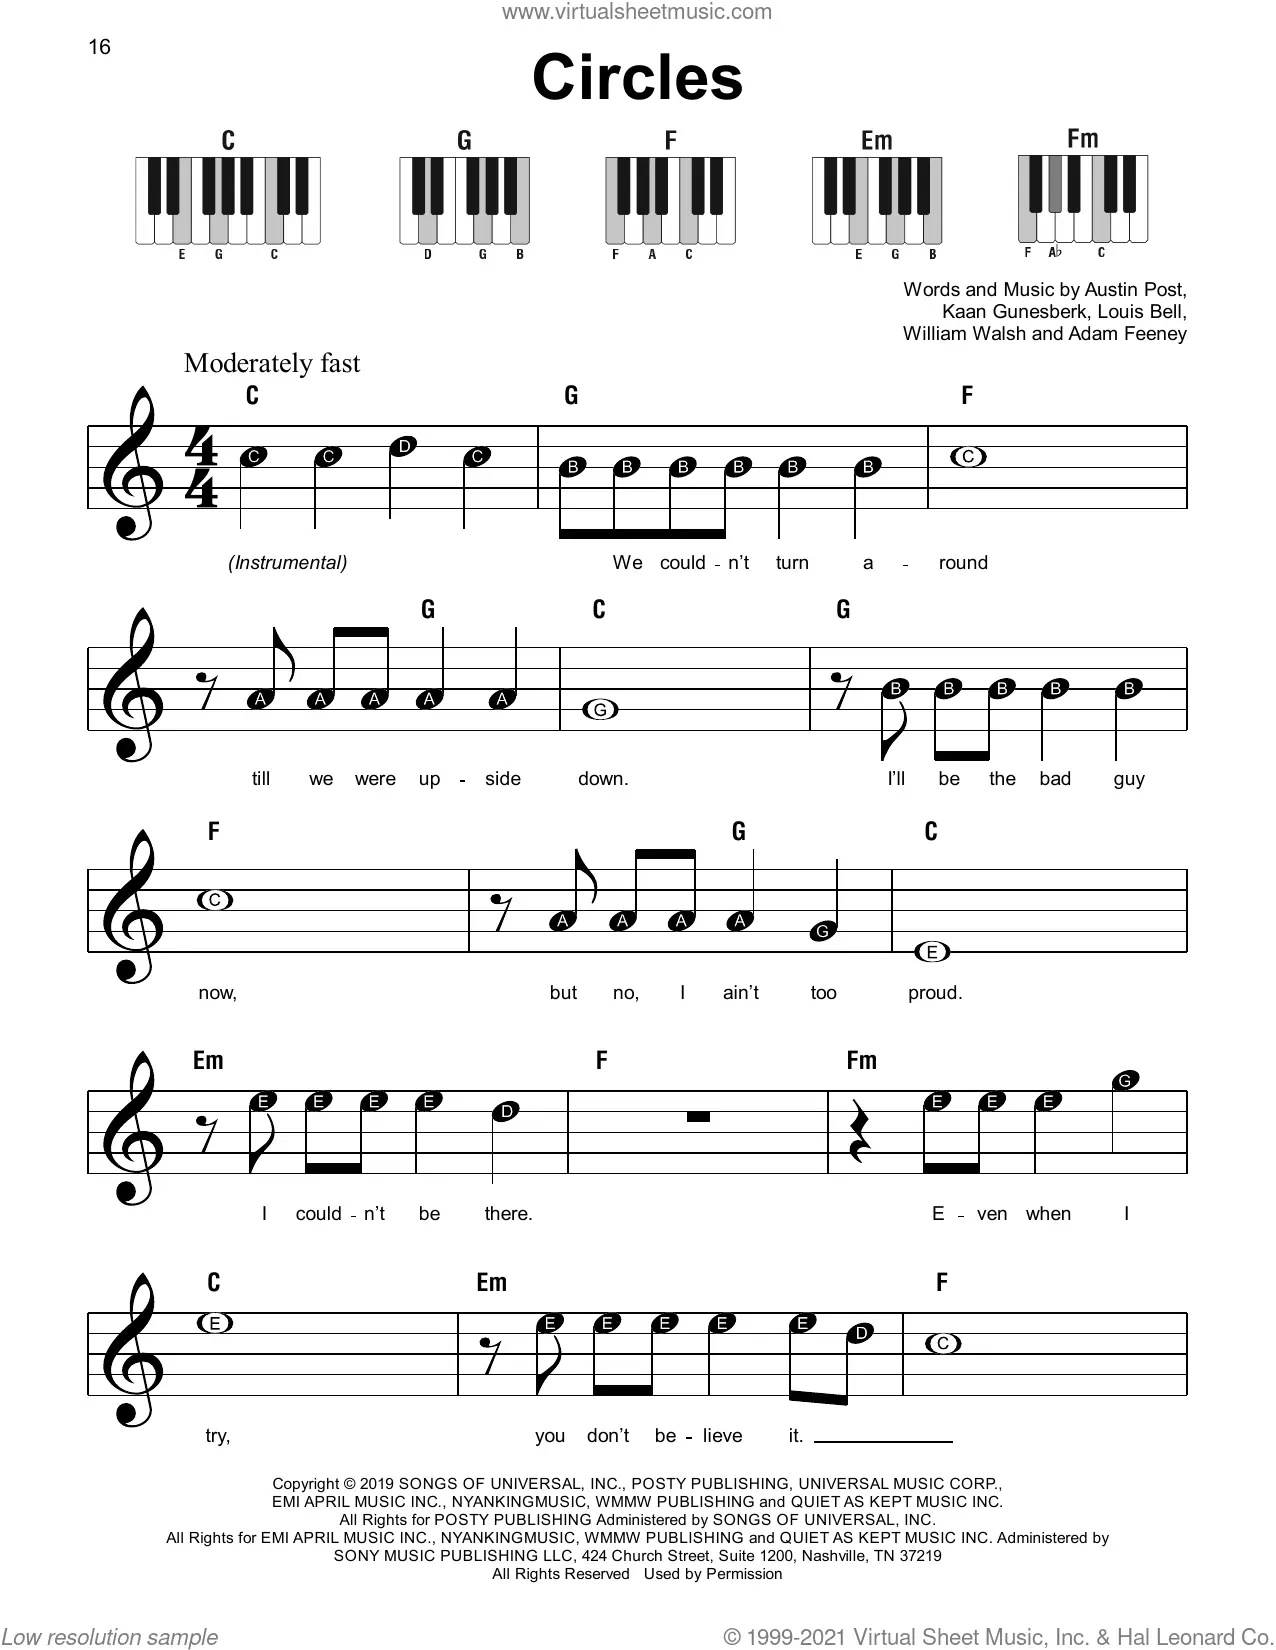 Rockstar Post Malone Sheet music for Piano (Solo)